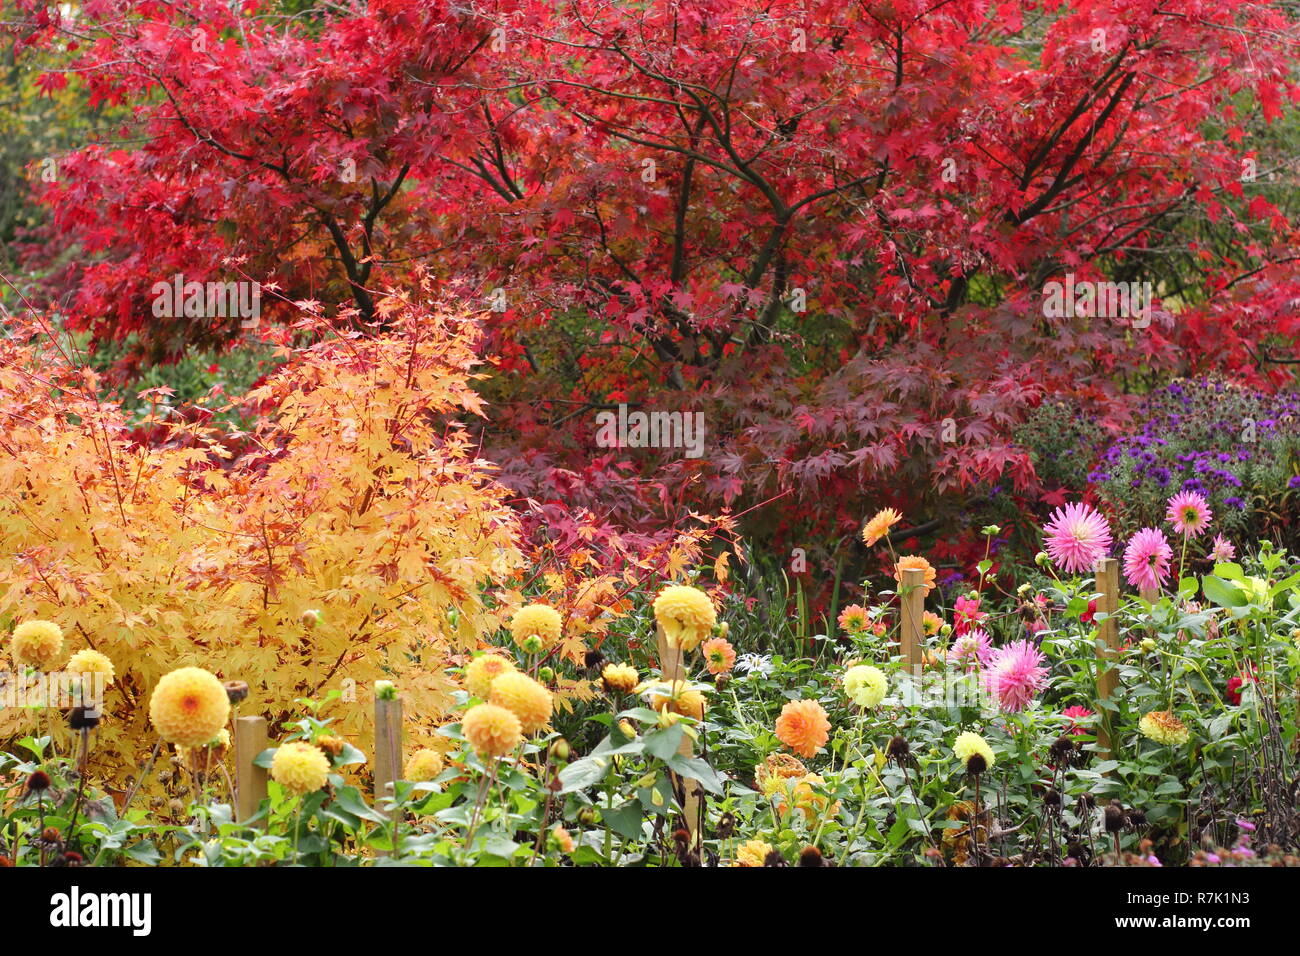 Autumn Garden frontera con hojas rojas de Acer palmatum Matsukaze, árbol de follaje amarillo de Acer palmatum Sango kaku y dalia flores, Octubre, REINO UNIDO Foto de stock